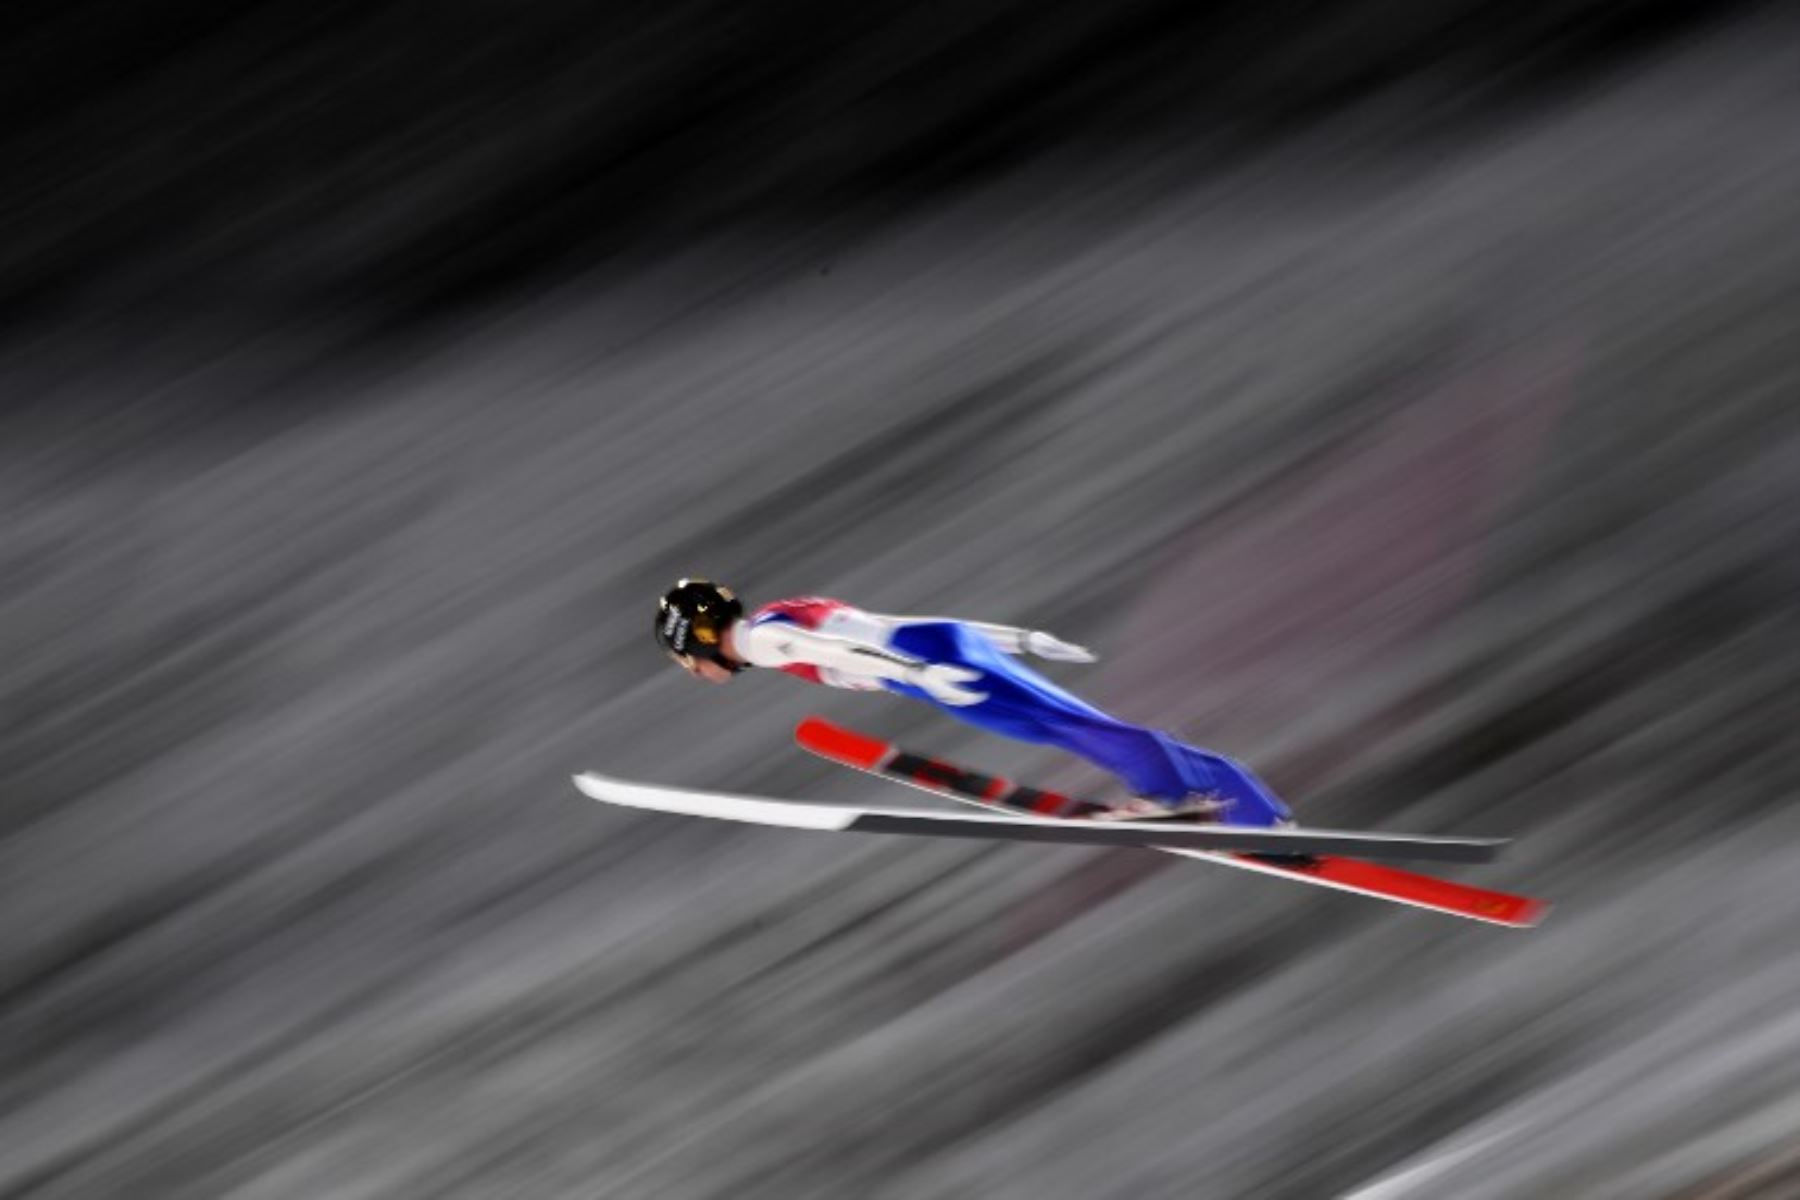 Juegos Olímpicos de Invierno Pyeongchang 2018.Foto:AFP